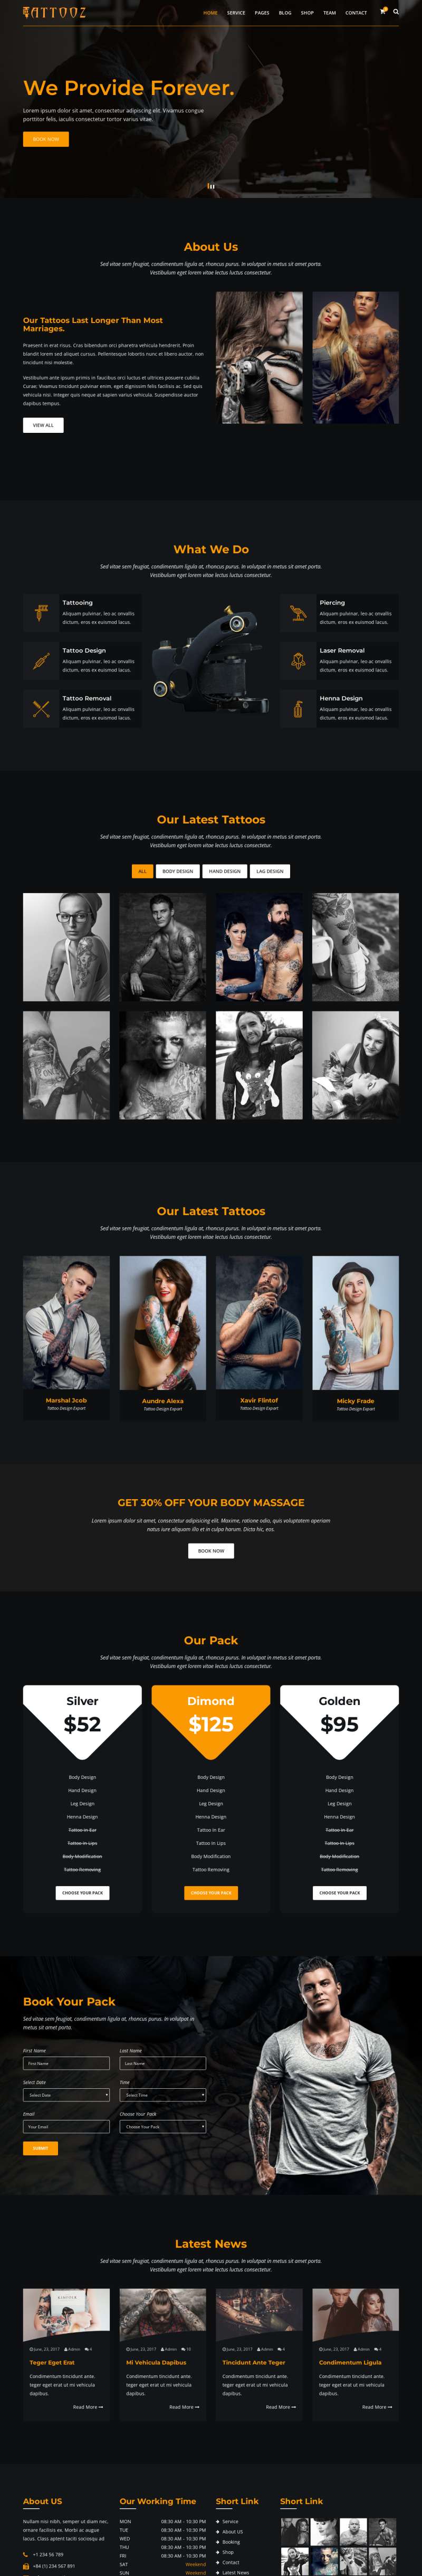 纹身网站设计，高质量的纹身艺术网站html模板源码